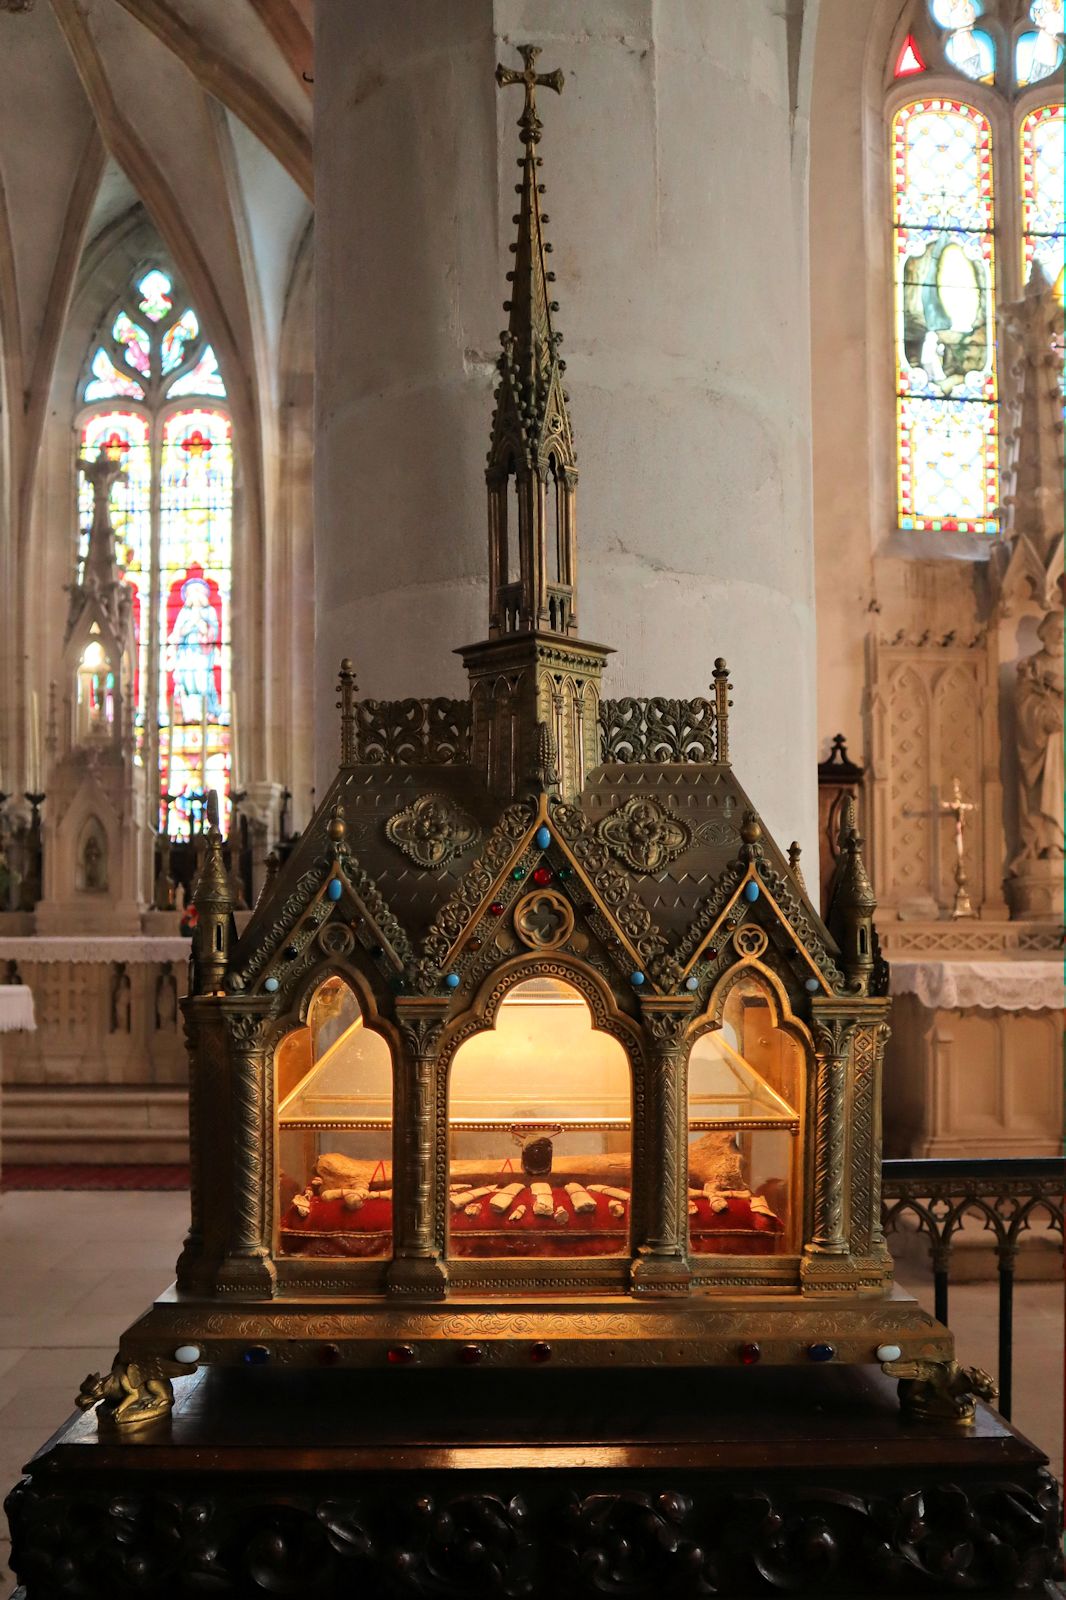 Eliphius' Reliquien im Reliquiar von 1869 in der Pfarrkirche in St-Élophe